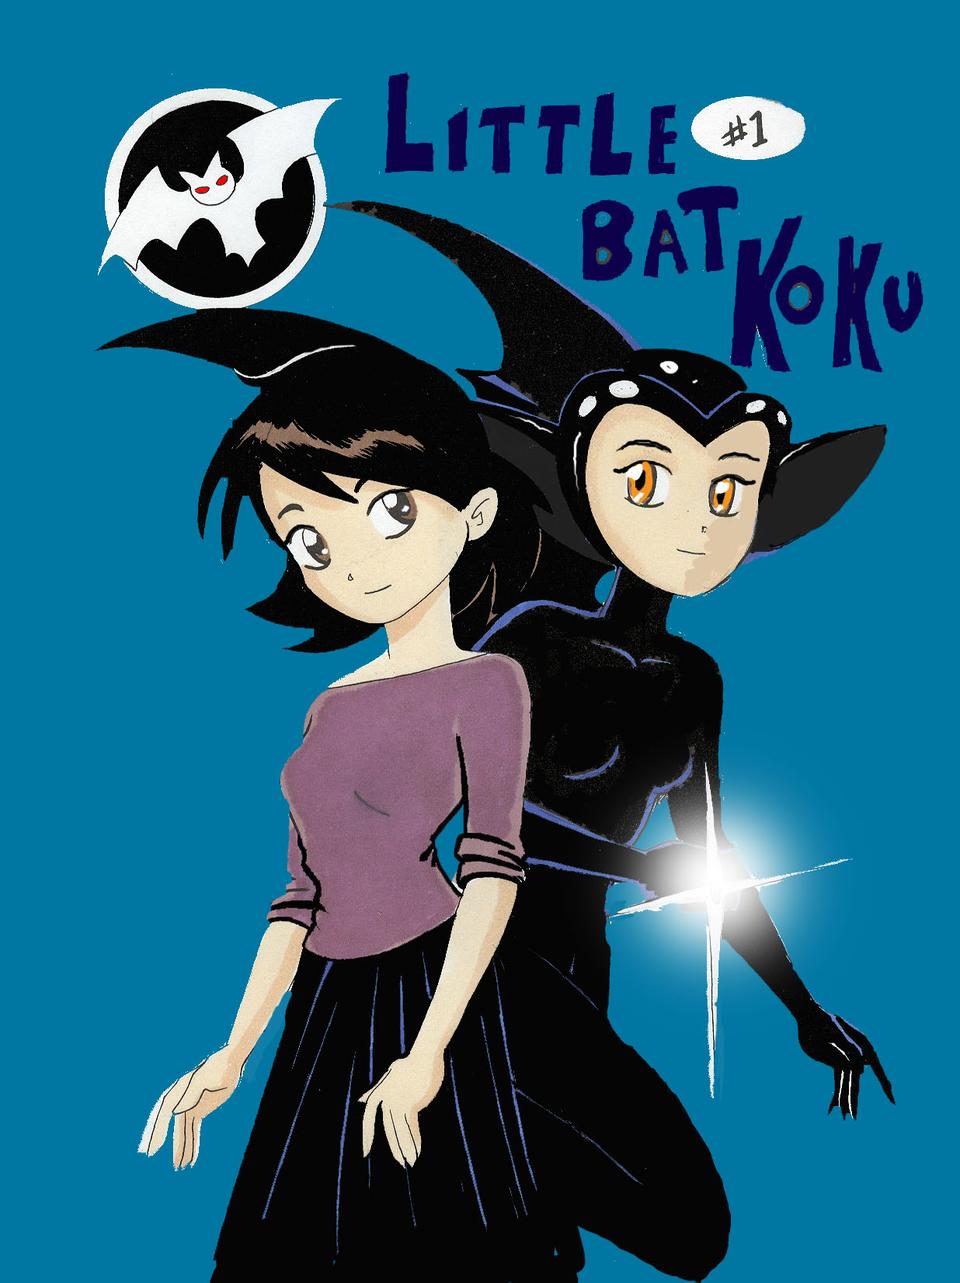 Little Bat Koku #1 cover